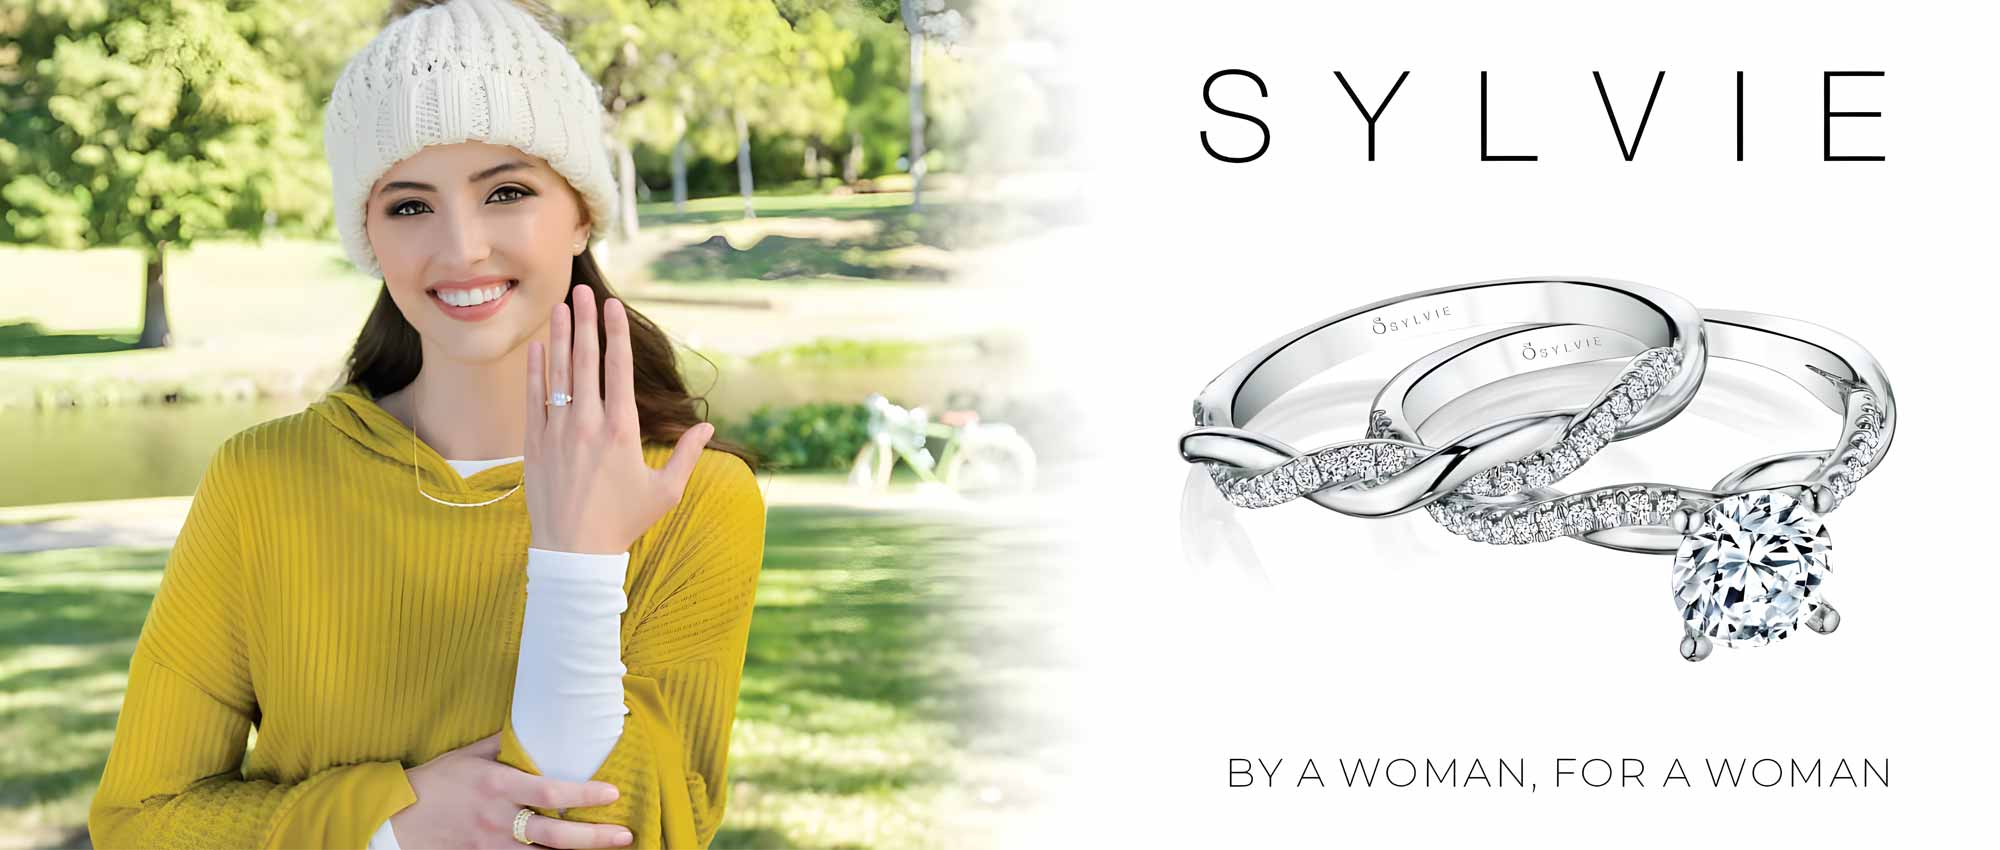 Browse Sylvie Diamond Rings At Midtown Jewelers